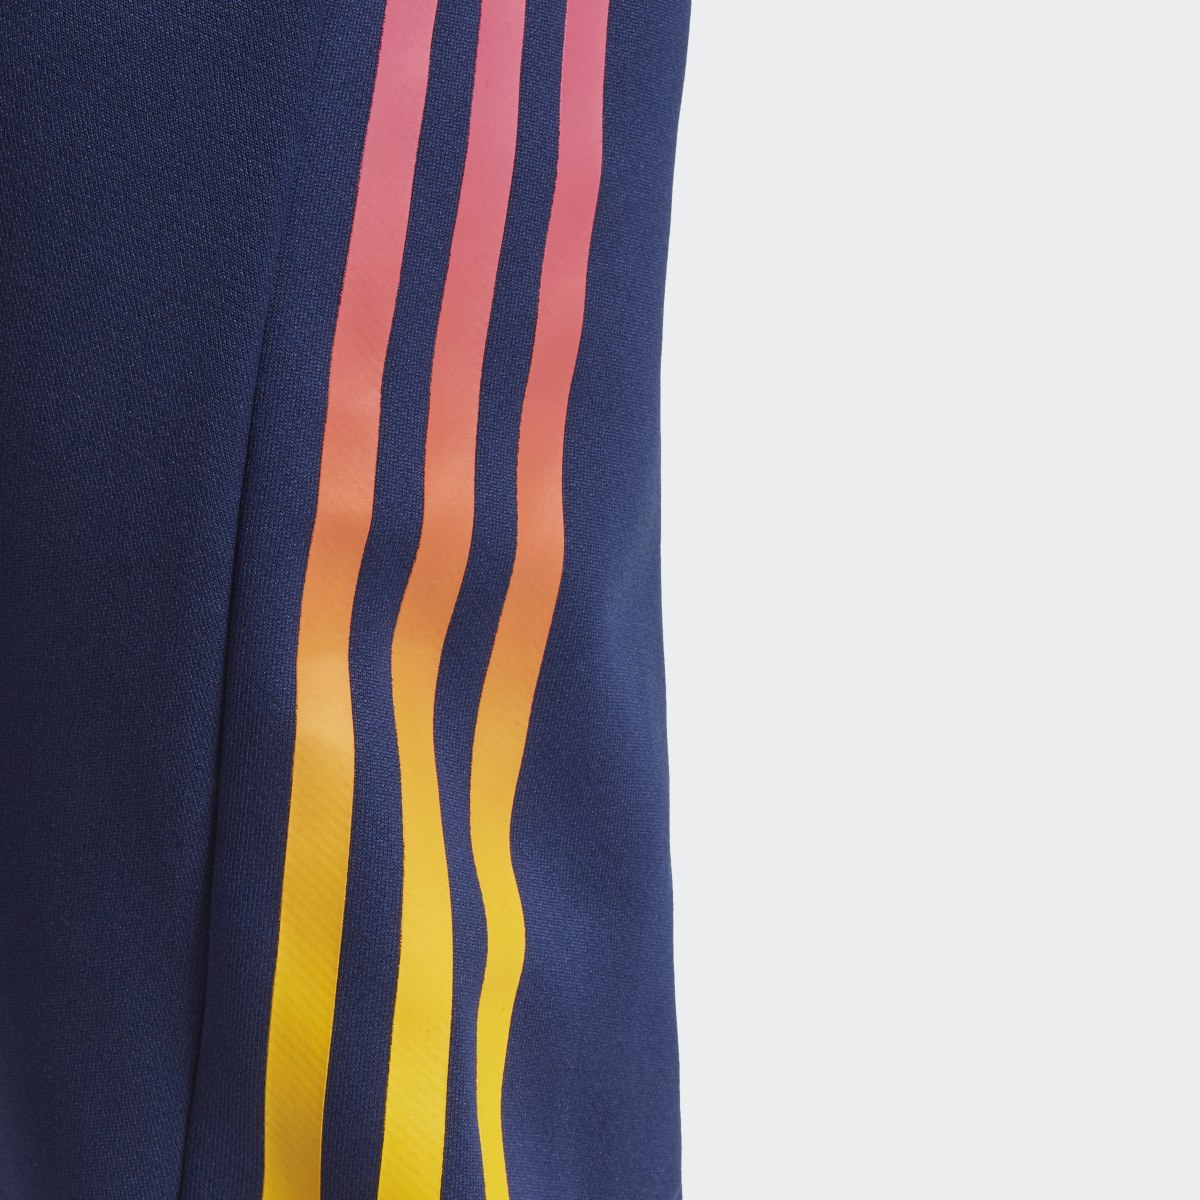 Adidas Train Icons 3-Stripes Training Pants. 6